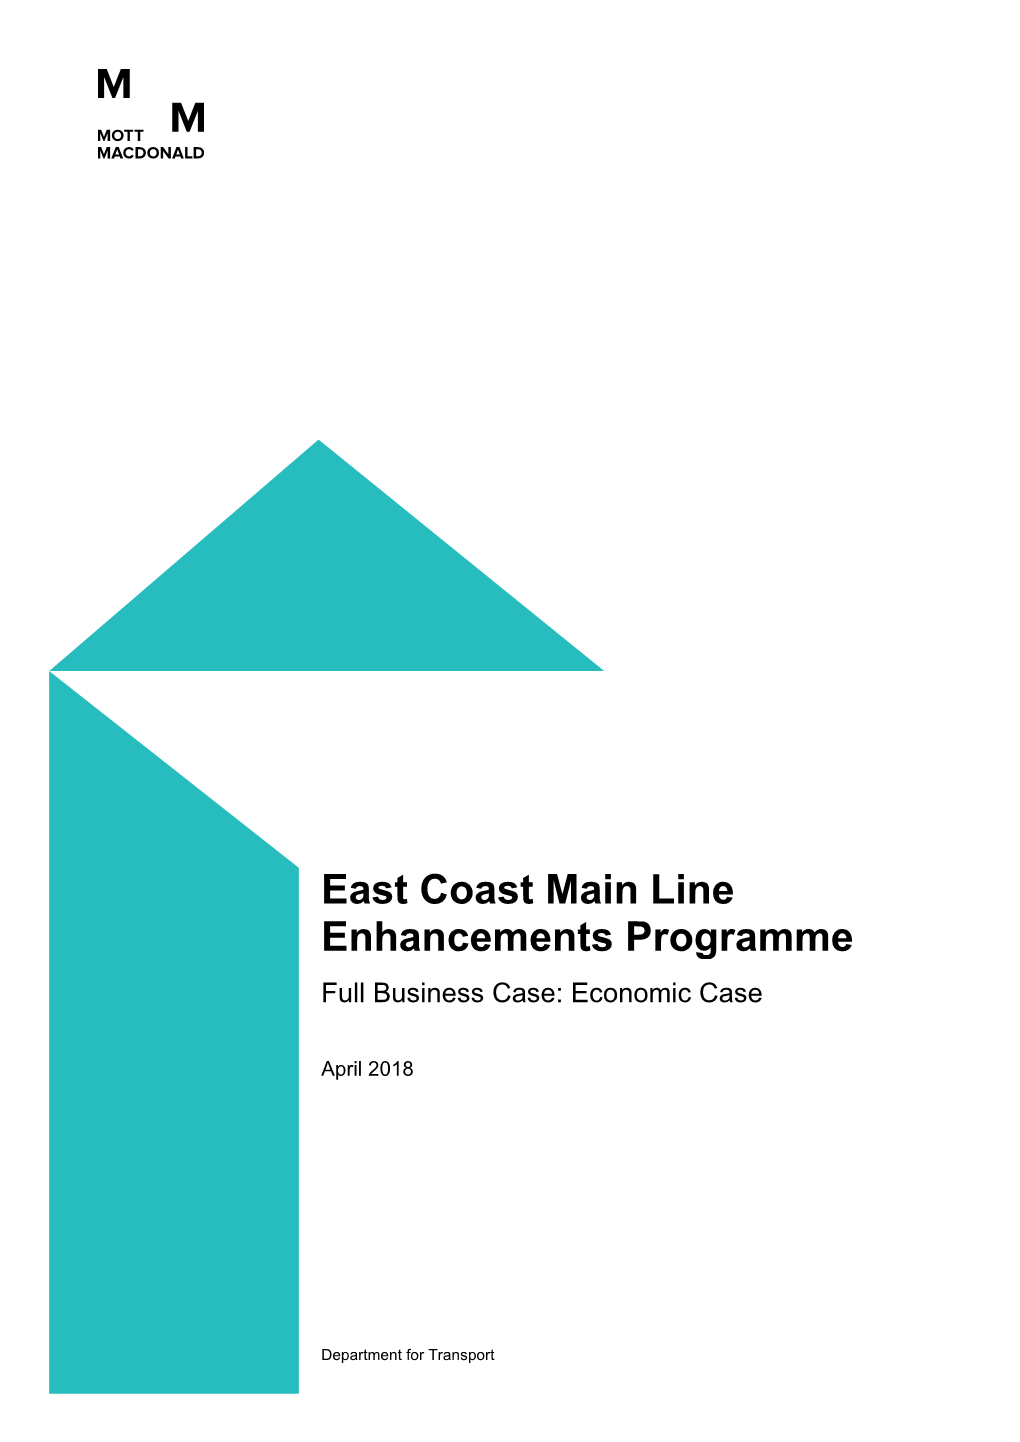 East Coast Main Line Enhancements Programme Full Business Case: Economic Case